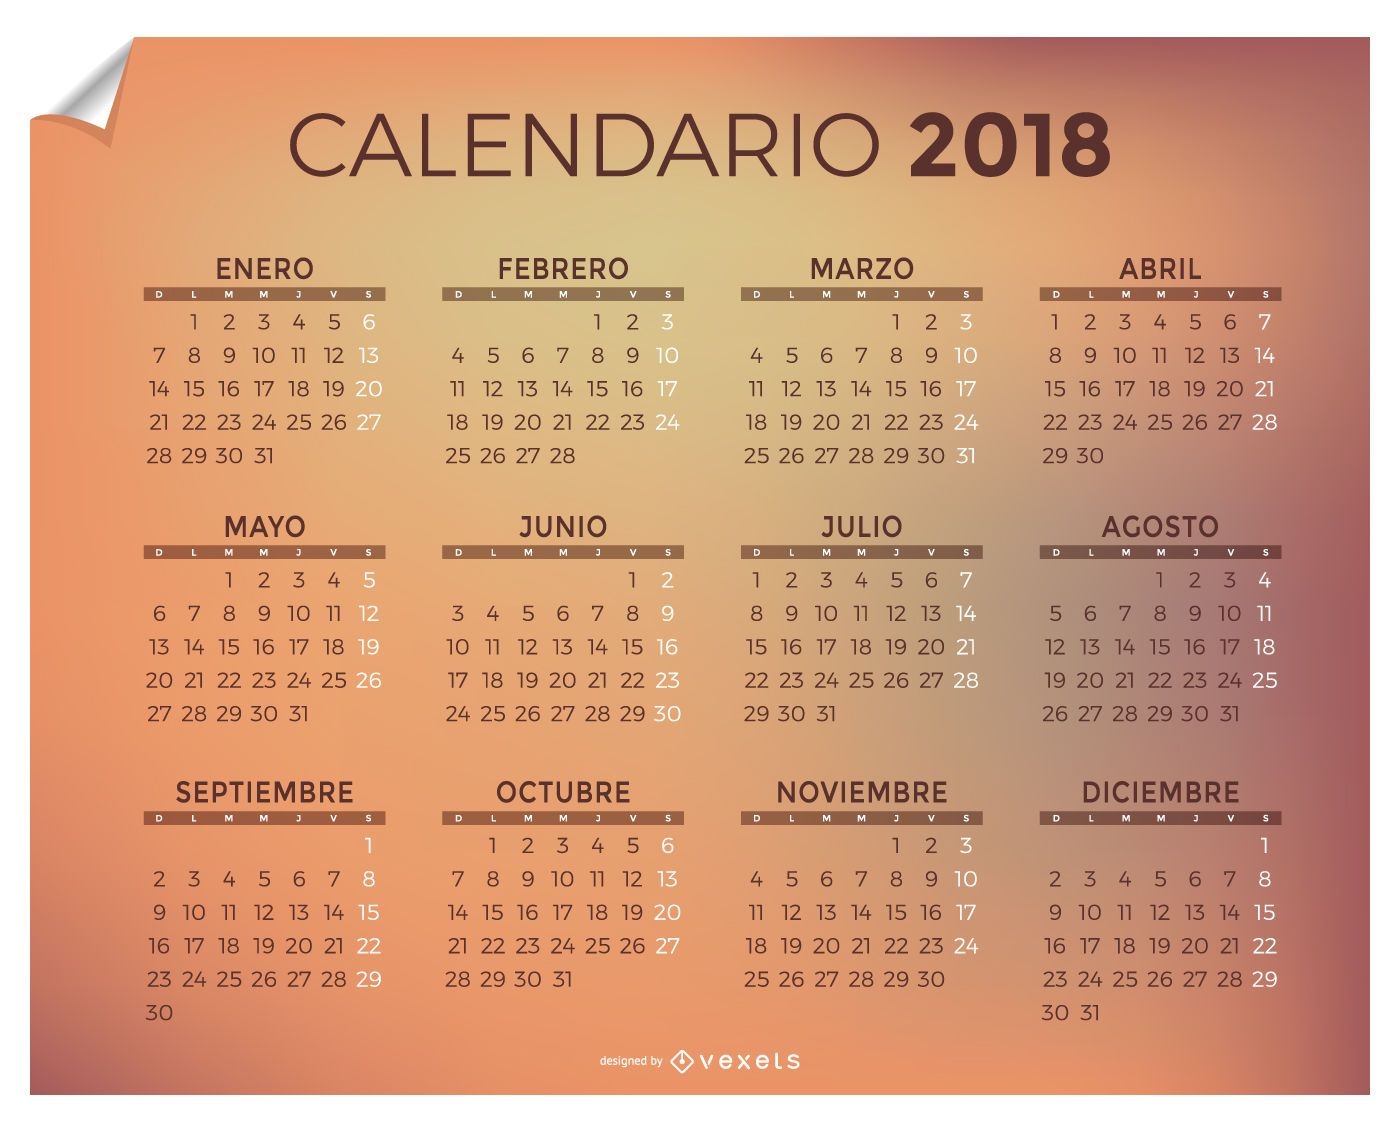 Kalender 2018 auf Spanisch